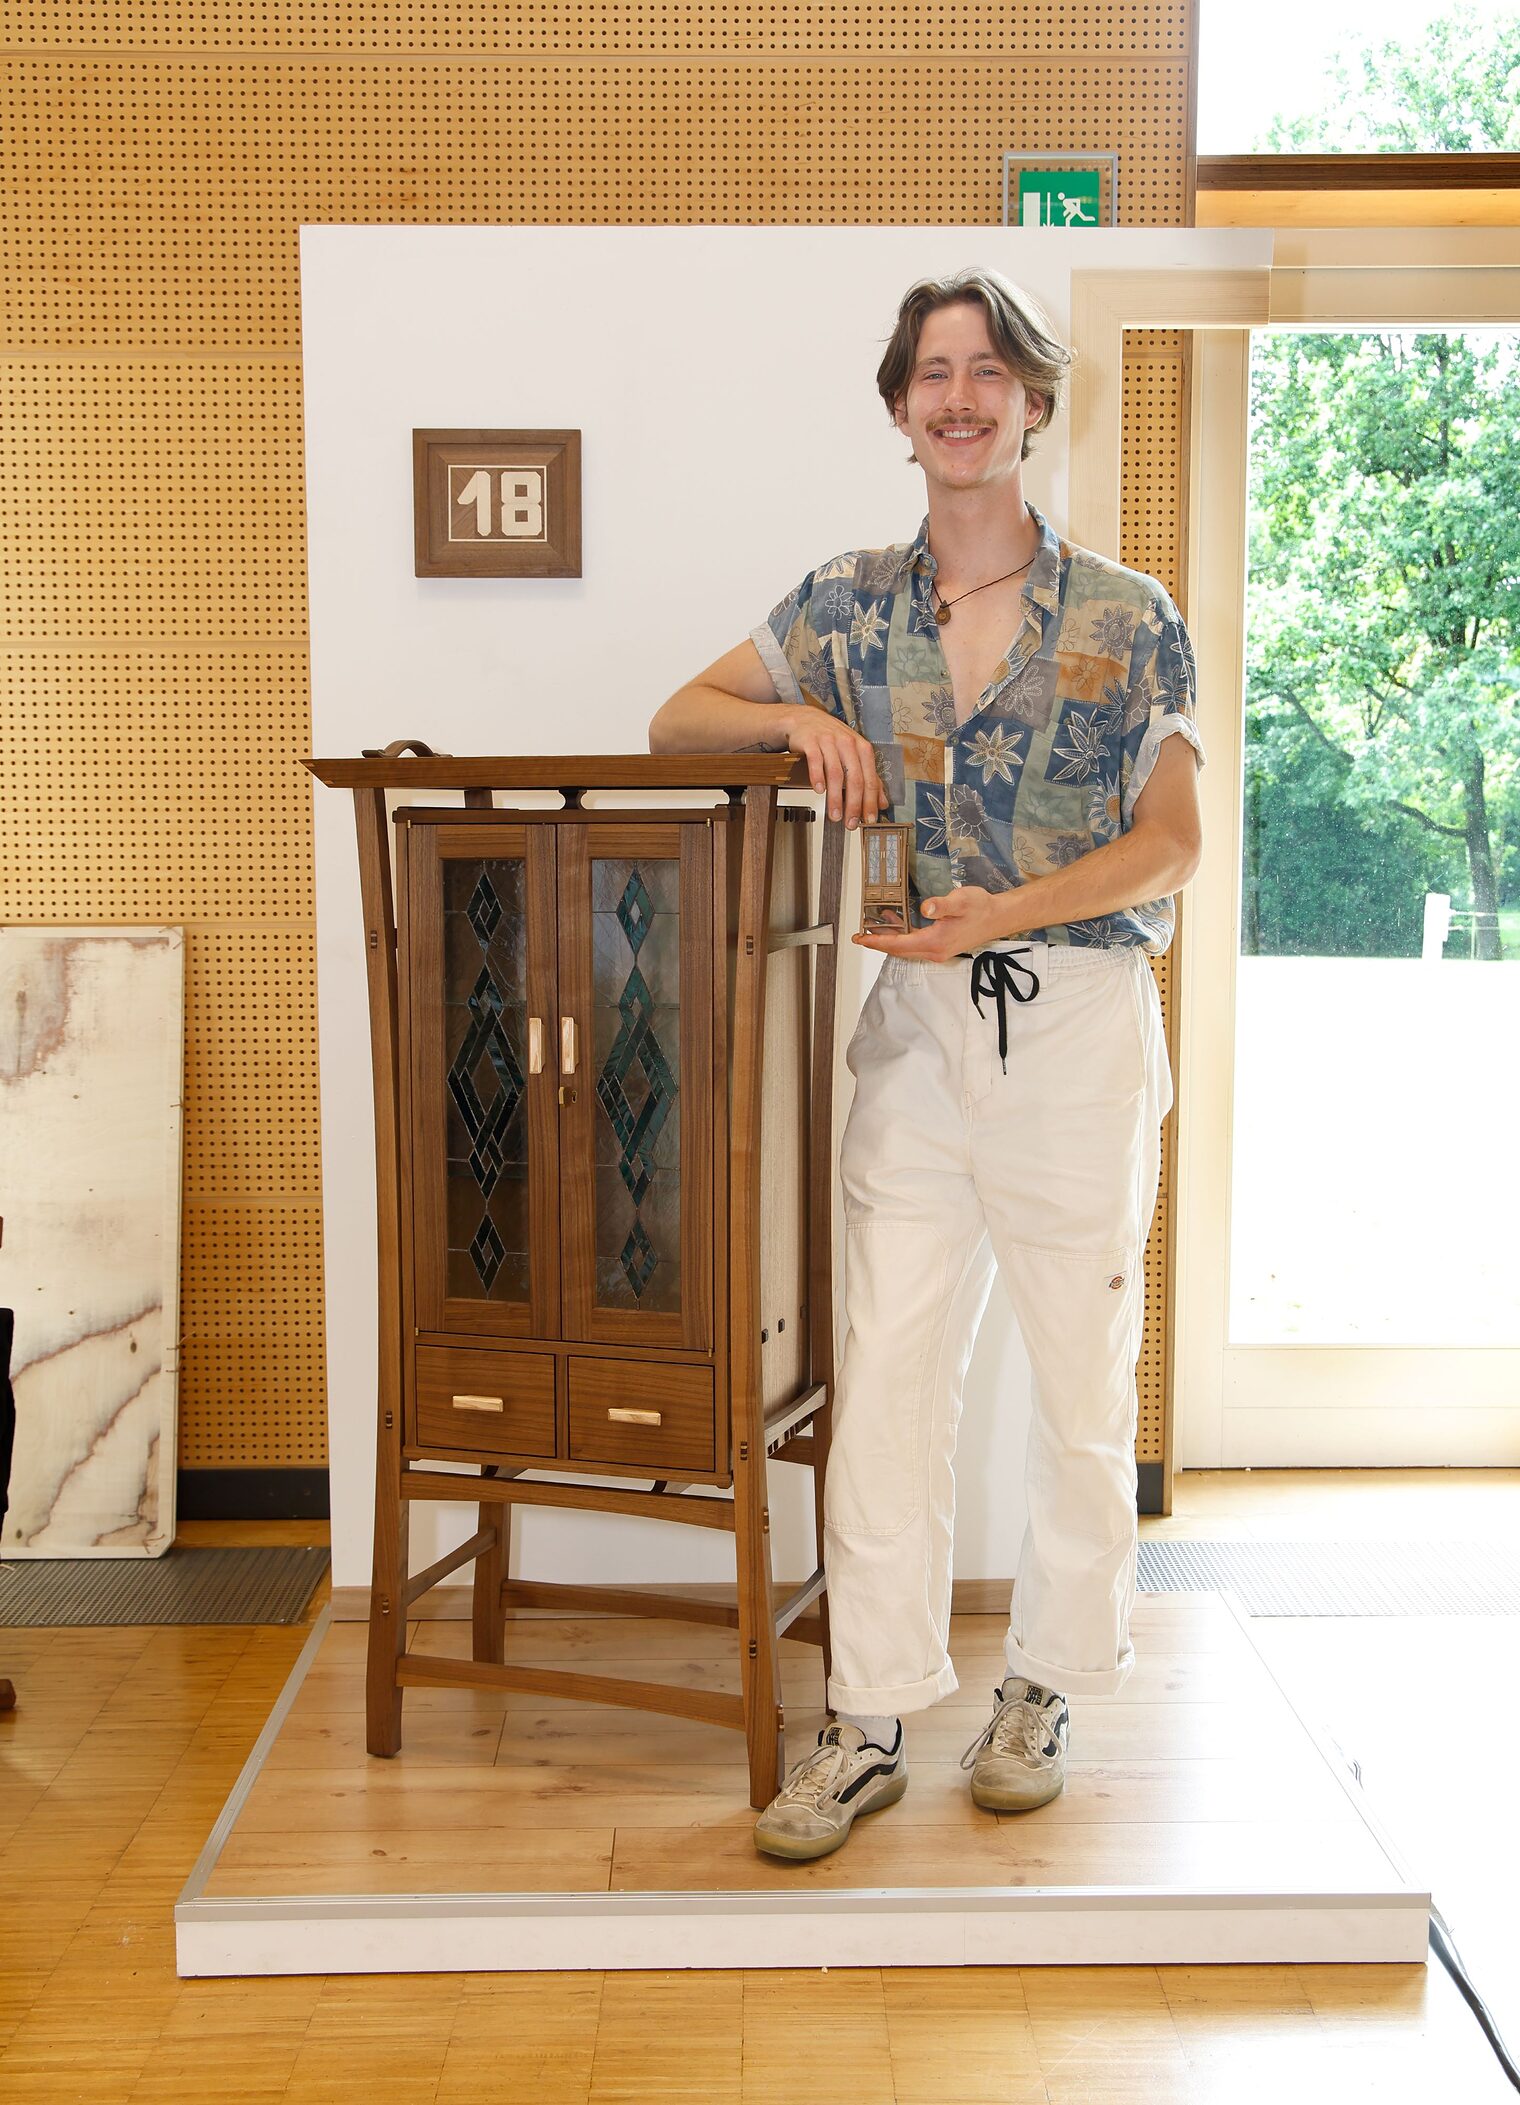 Das Möbelstück "Japandi" fertigte Korbinian Wimmer aus Ergoldsbach in Nussbaum und Esche, incl. Tiffany-Verglasung